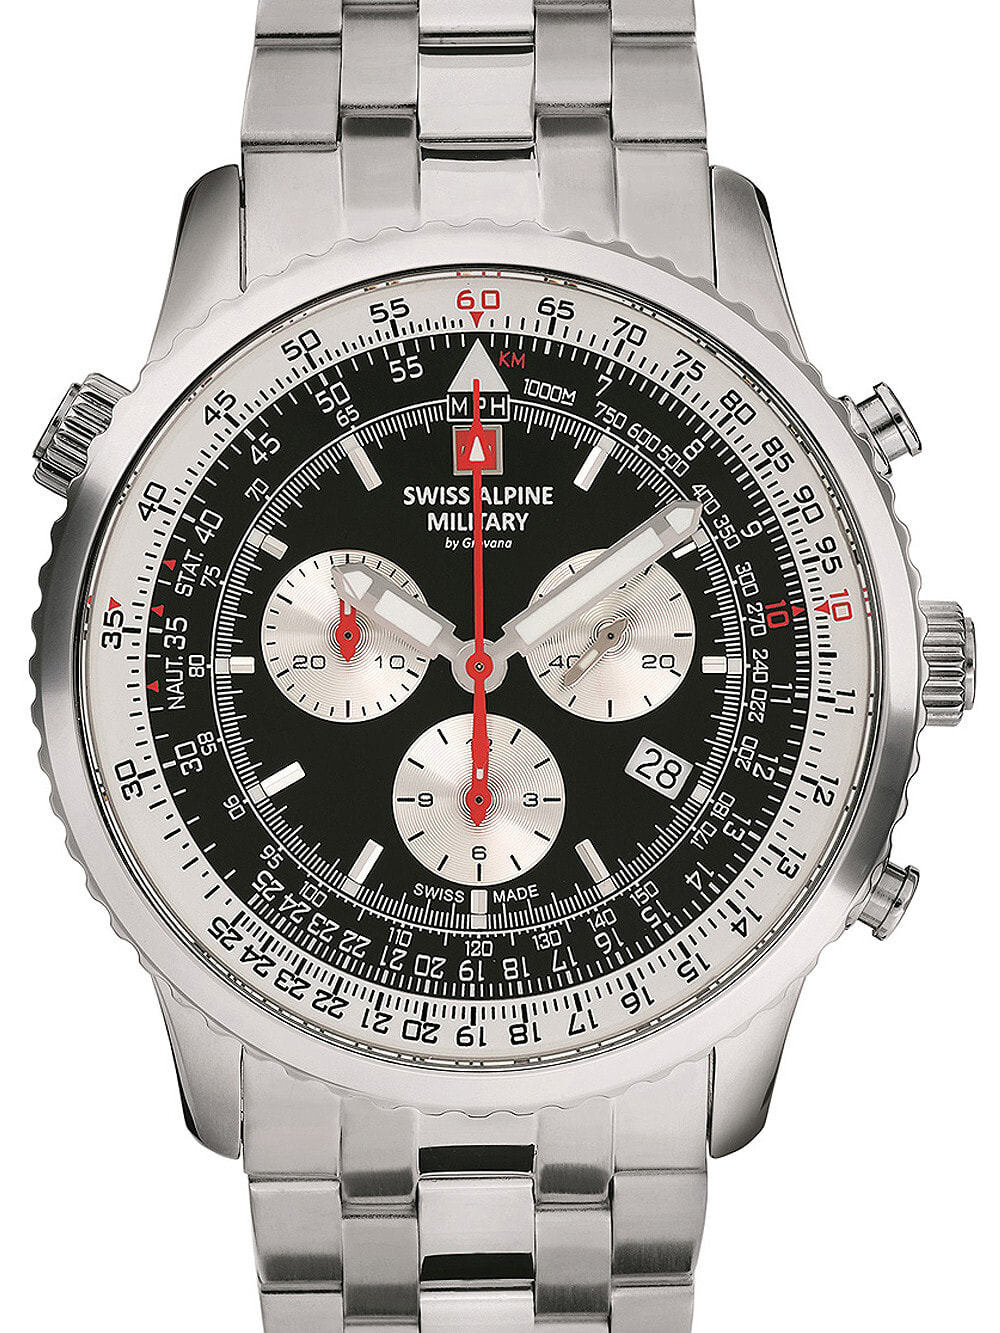 Мужские наручные часы с серебряным браслетом Swiss Alpine Military 7078.9137 chrono mens 45mm 10ATM